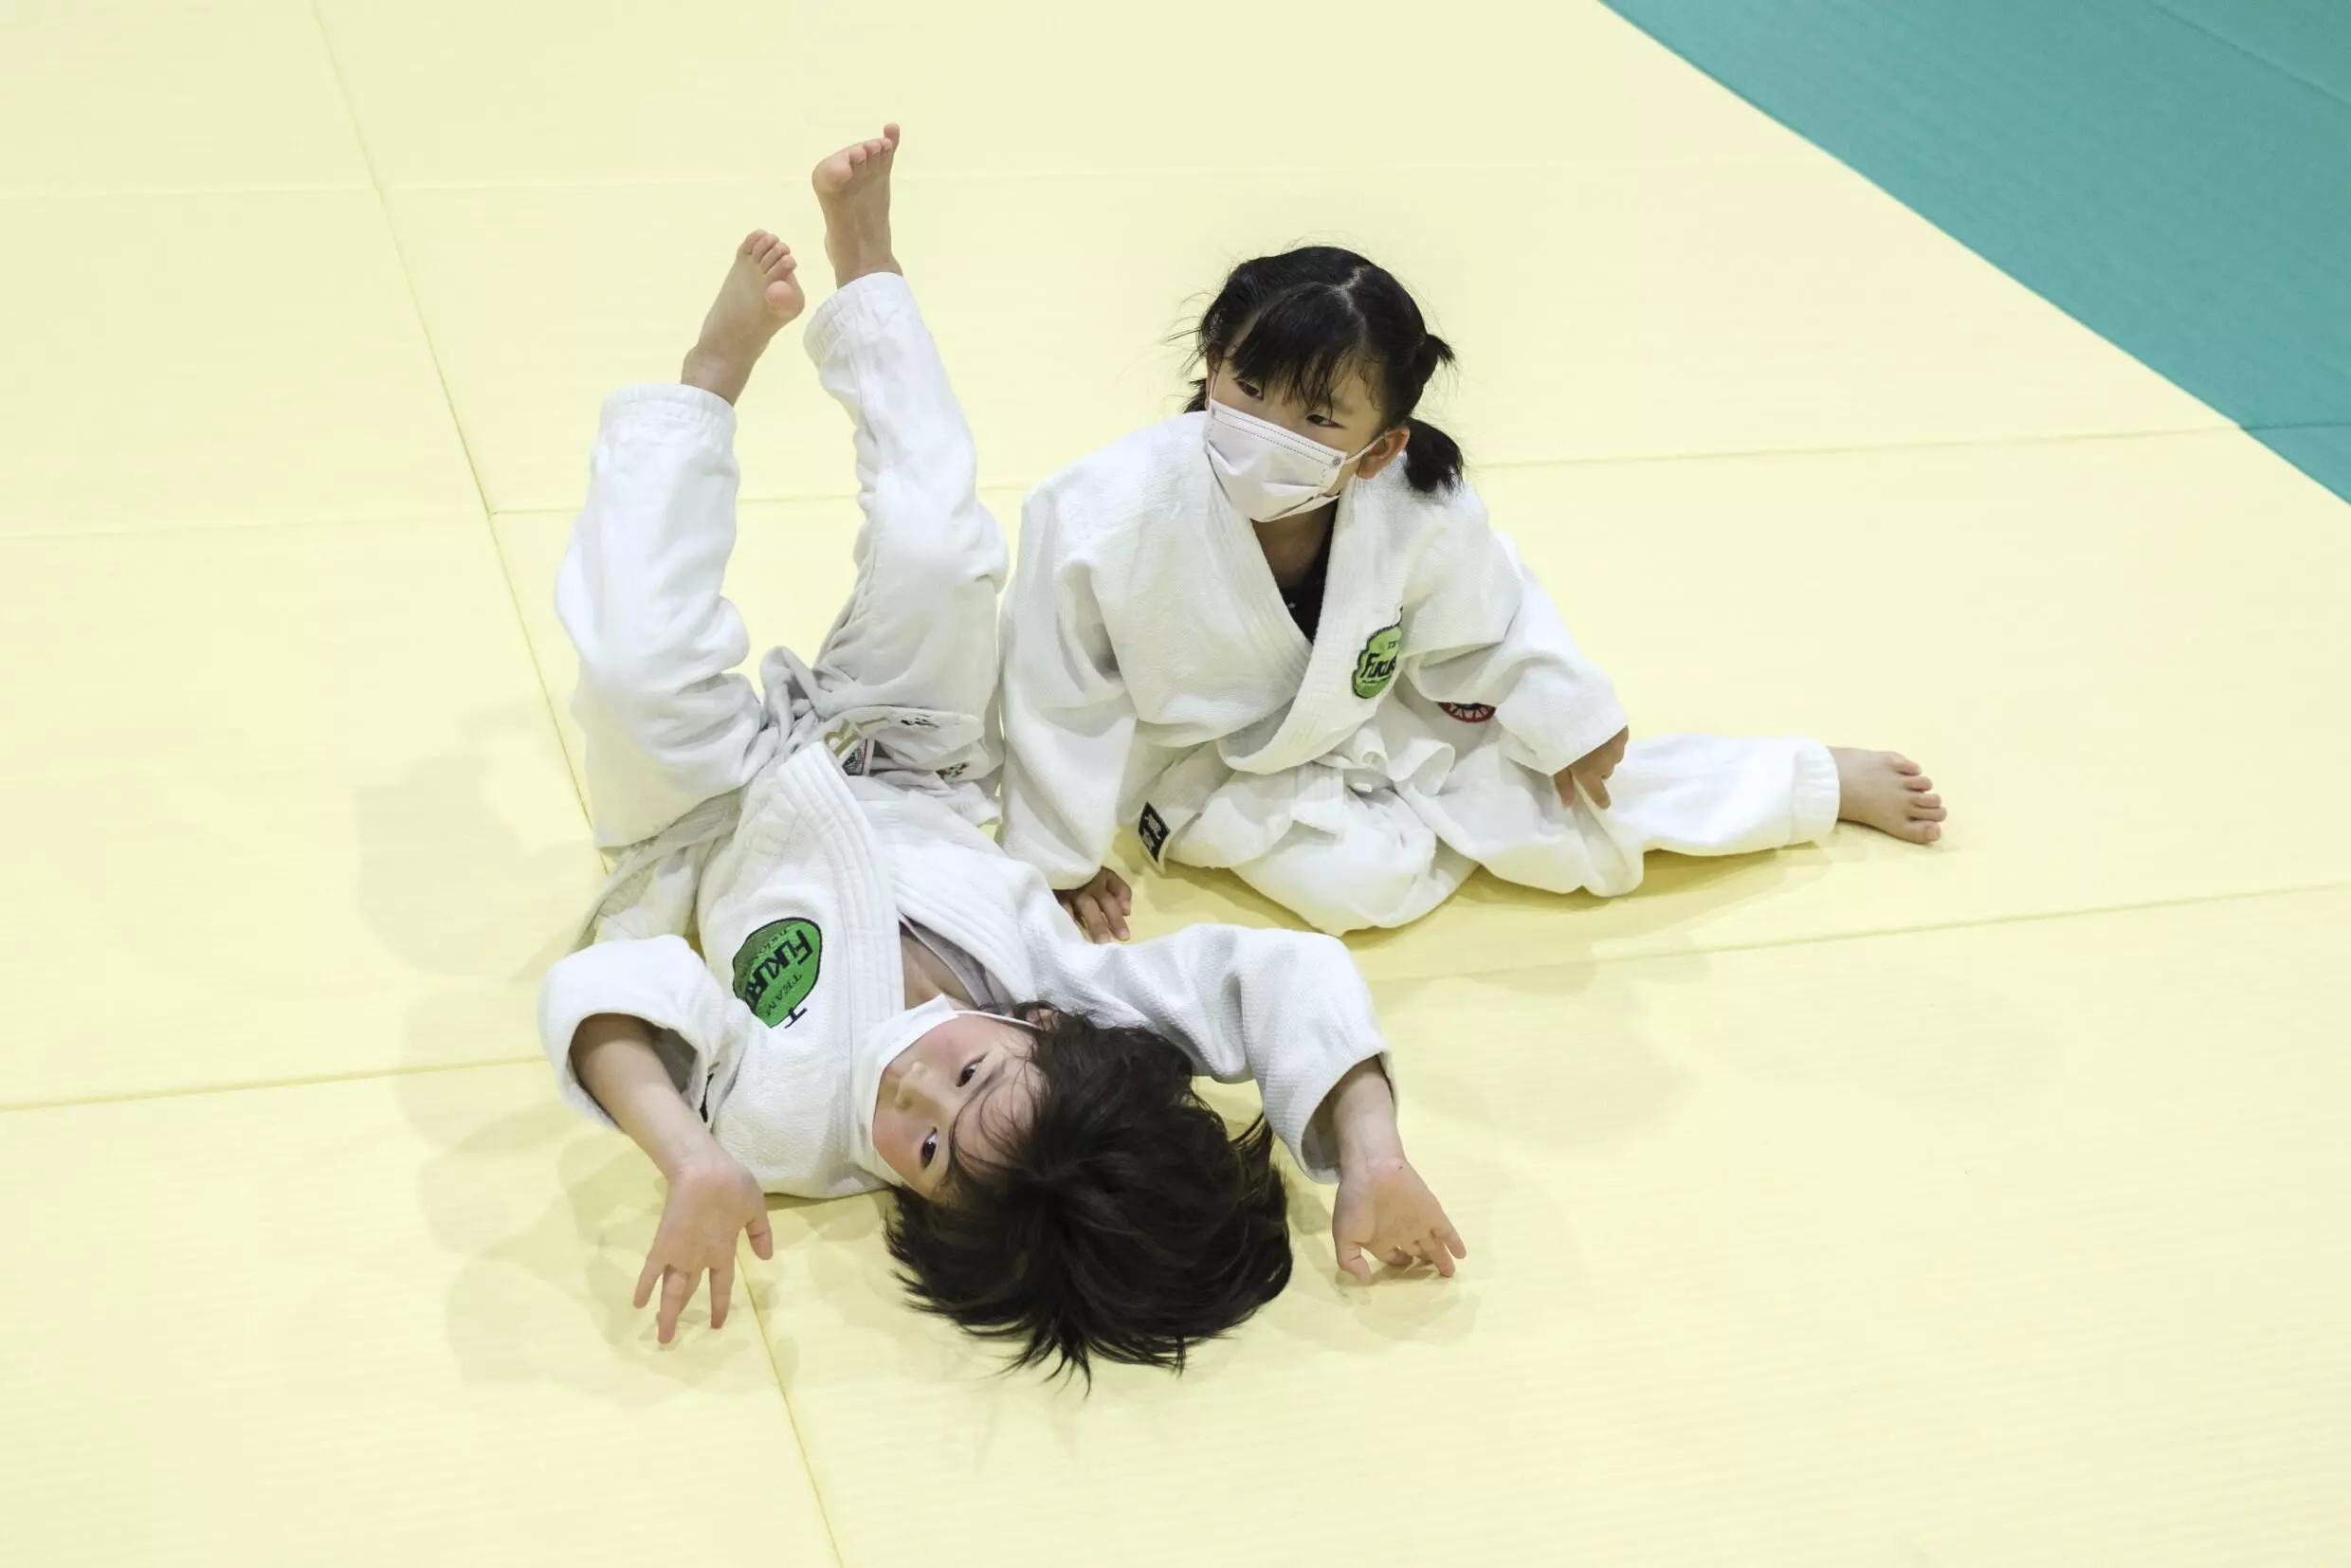 Children train at a judo session in Fukuroi, Shizuoka prefecture. Photo: AFP